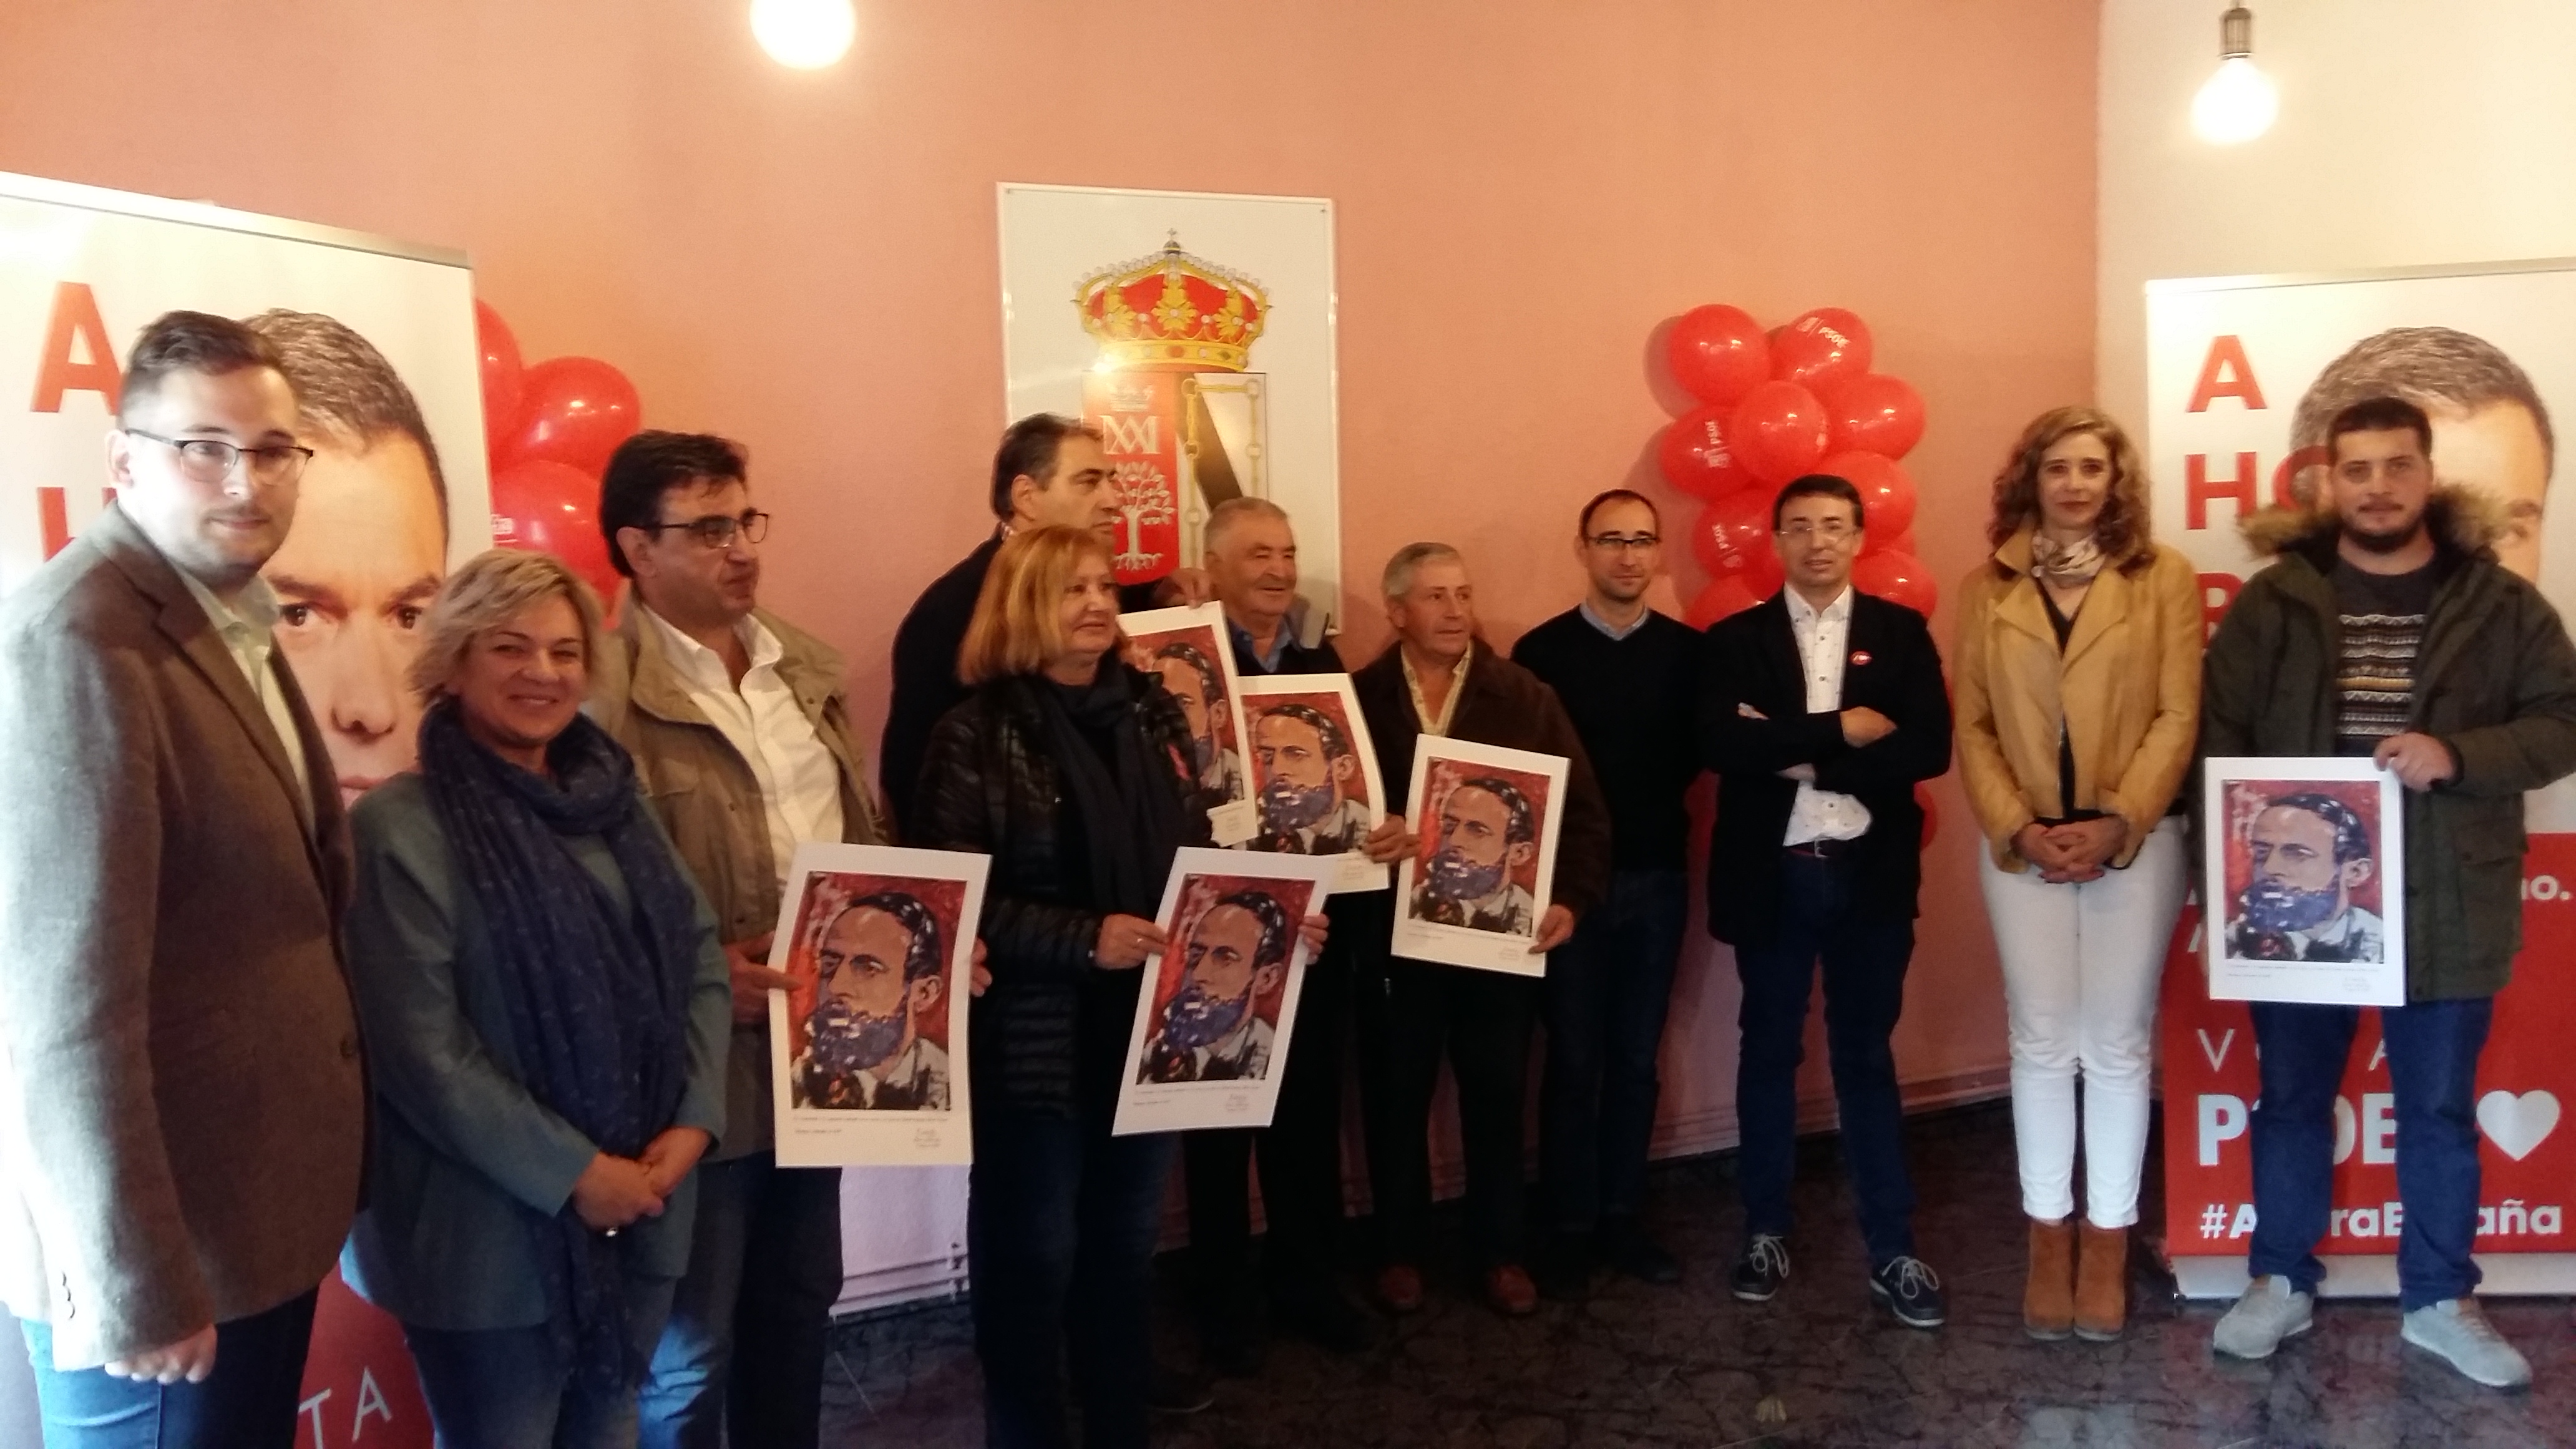 Los socialistas homenajean a los alcaldes y alcaldesas más veteranos de la Sierra de Francia. El acto tuvo lugar en Cereceda de la Sierra.